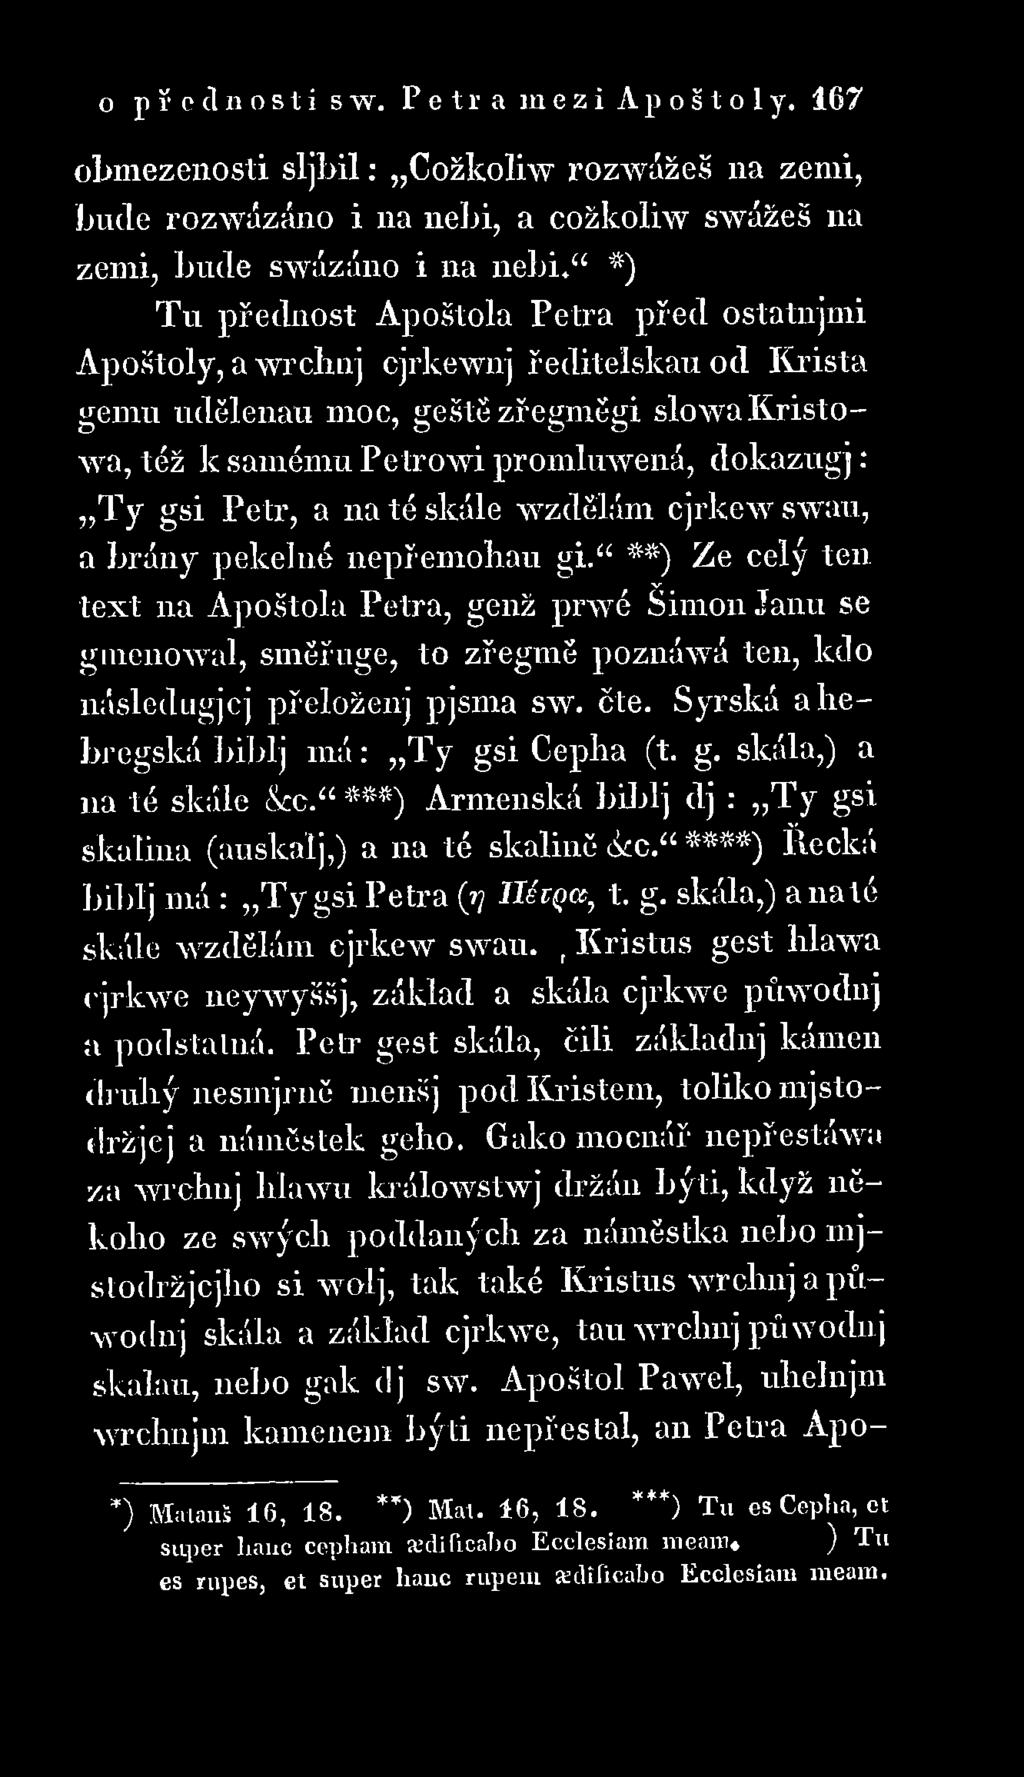 g. skála,) a na té skále c. ***) Arménská biblj dj : T y gsi skalina (auskalj,) a 11a té skalině cke. ****) Řecká biblj m á : T y gsi Petra (77 IlécQct, t. g. skála,) a n a té skále wzdělám cjrkew swau.